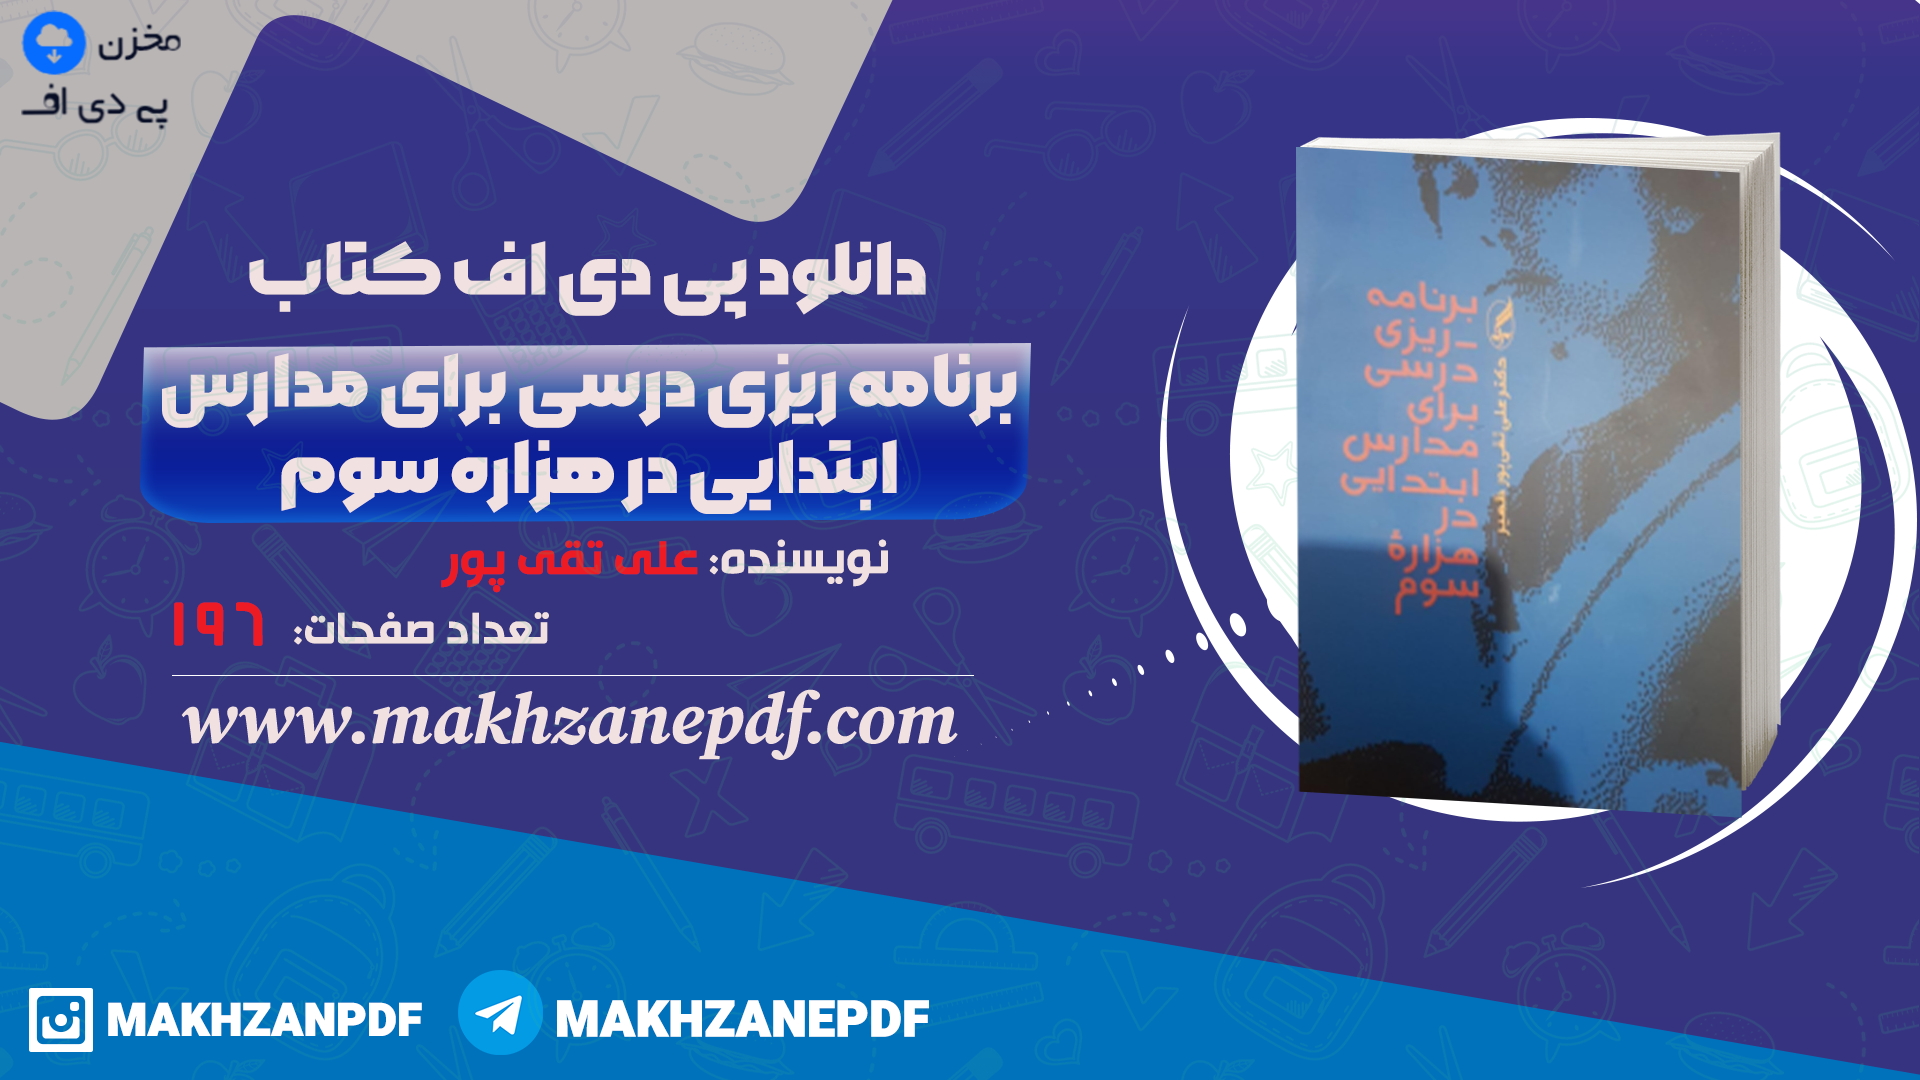 کتاب برنامه ریزی درسی برای مدارس ابتدائی در هزاره سوم علی تقی پور دانلود PDF - مخزن پی دی اف